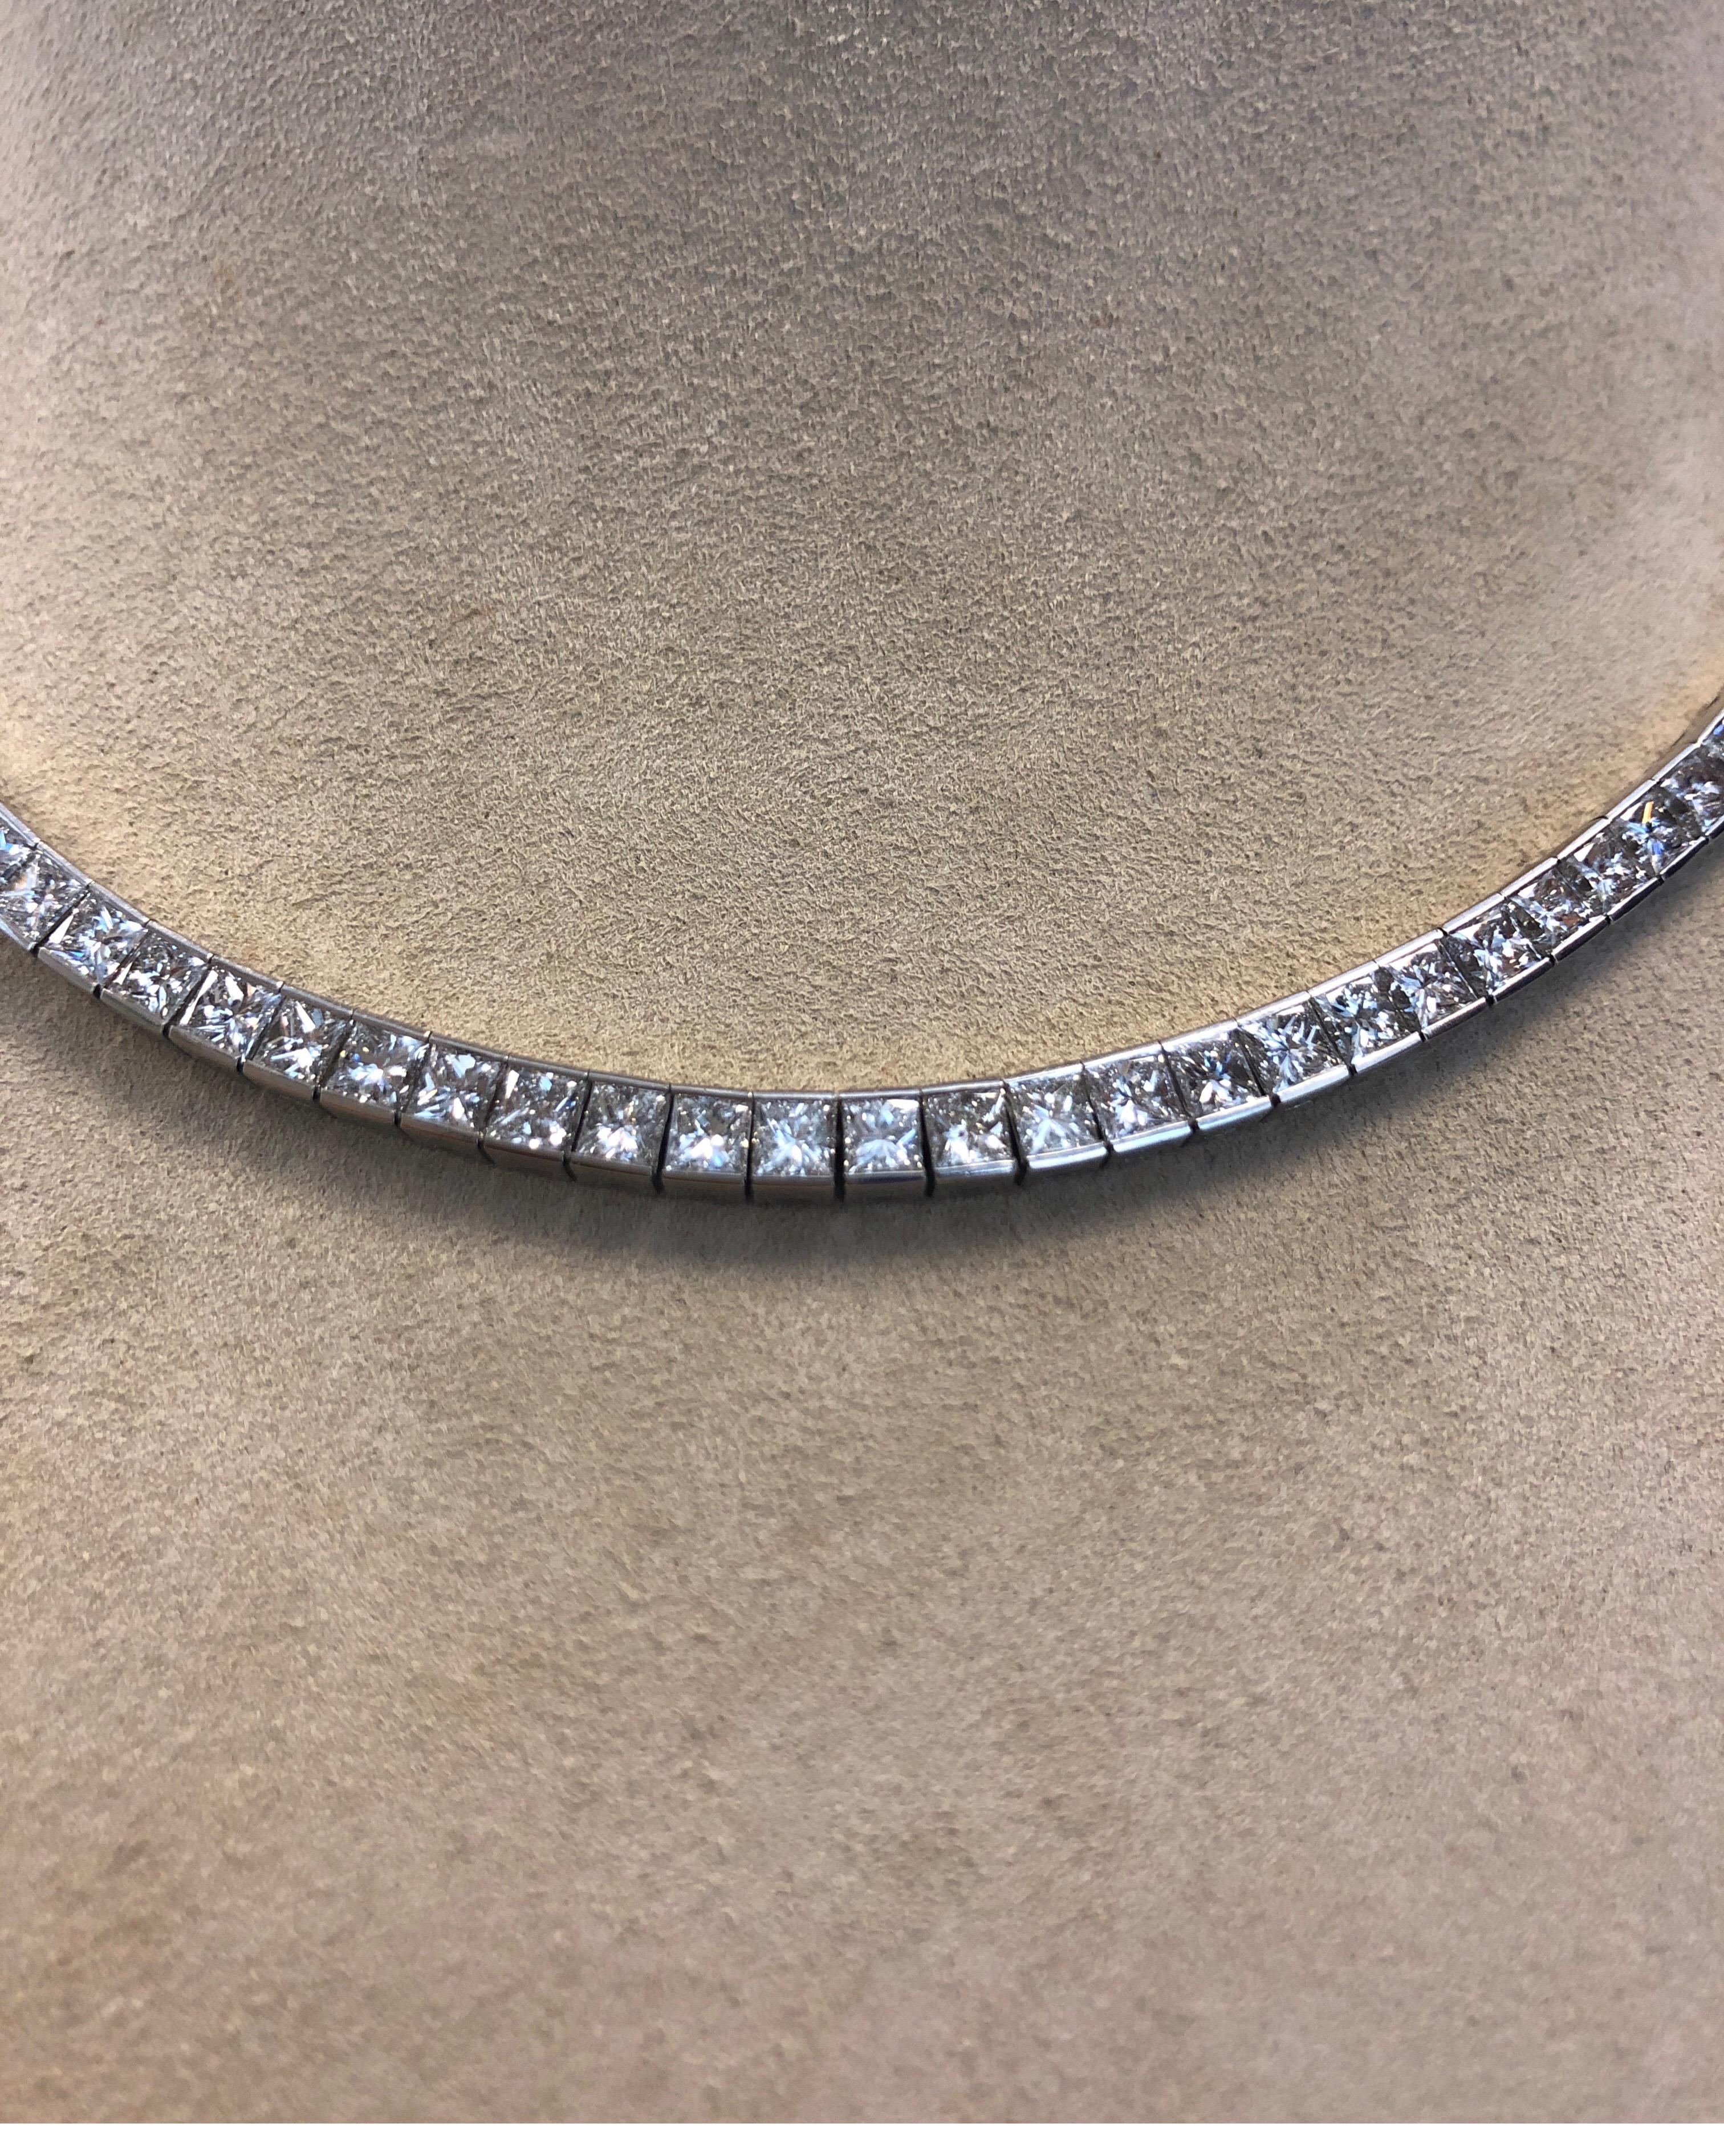 Contemporary Platinum Flexible Necklace, Channel Set with 98 Square Princess Cut Diamonds